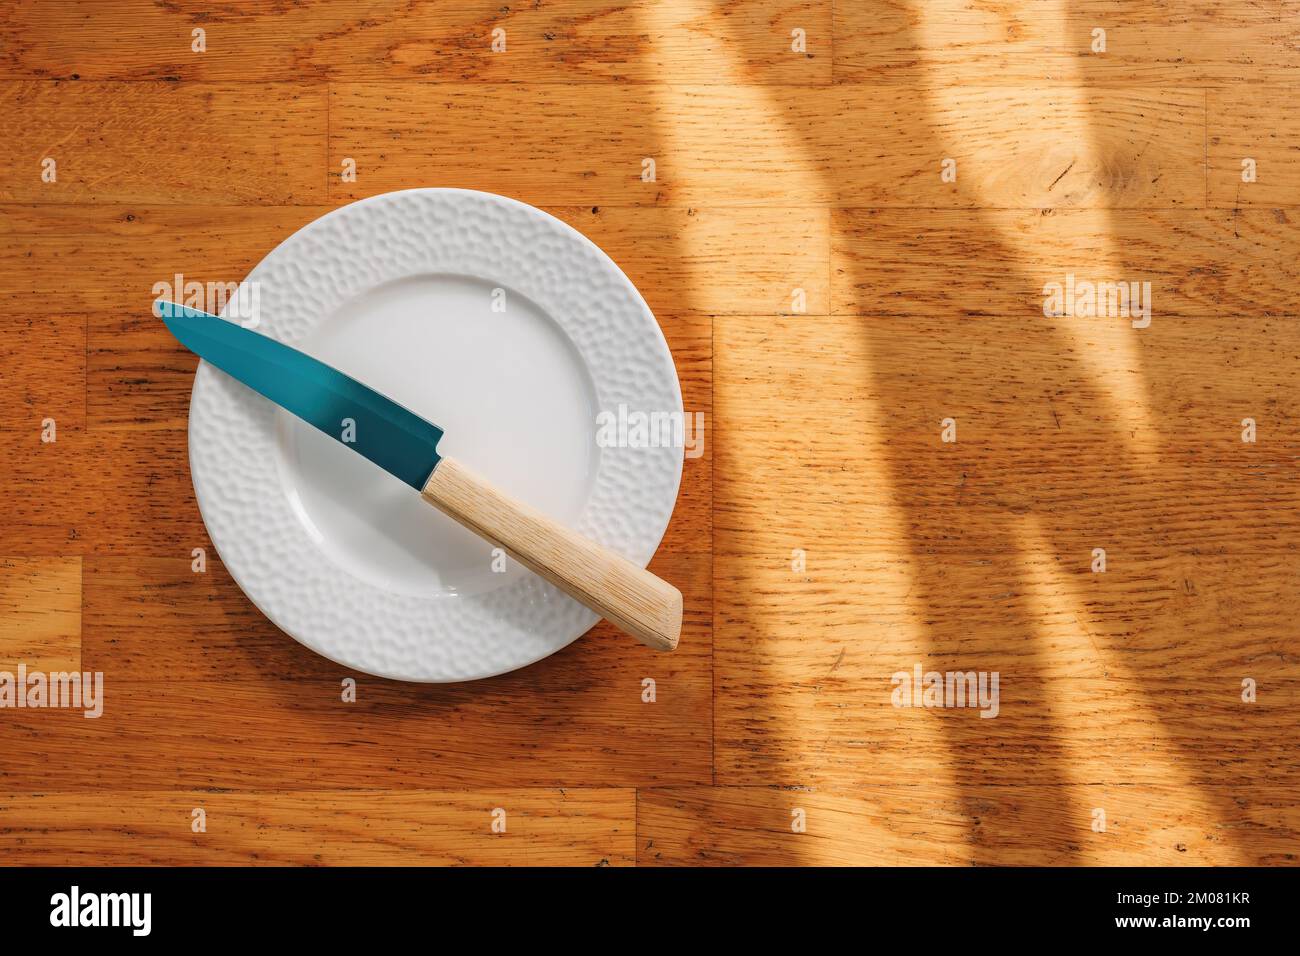 Cuchillo de cocina y plato vacío sobre fondo de madera, vista superior Foto de stock